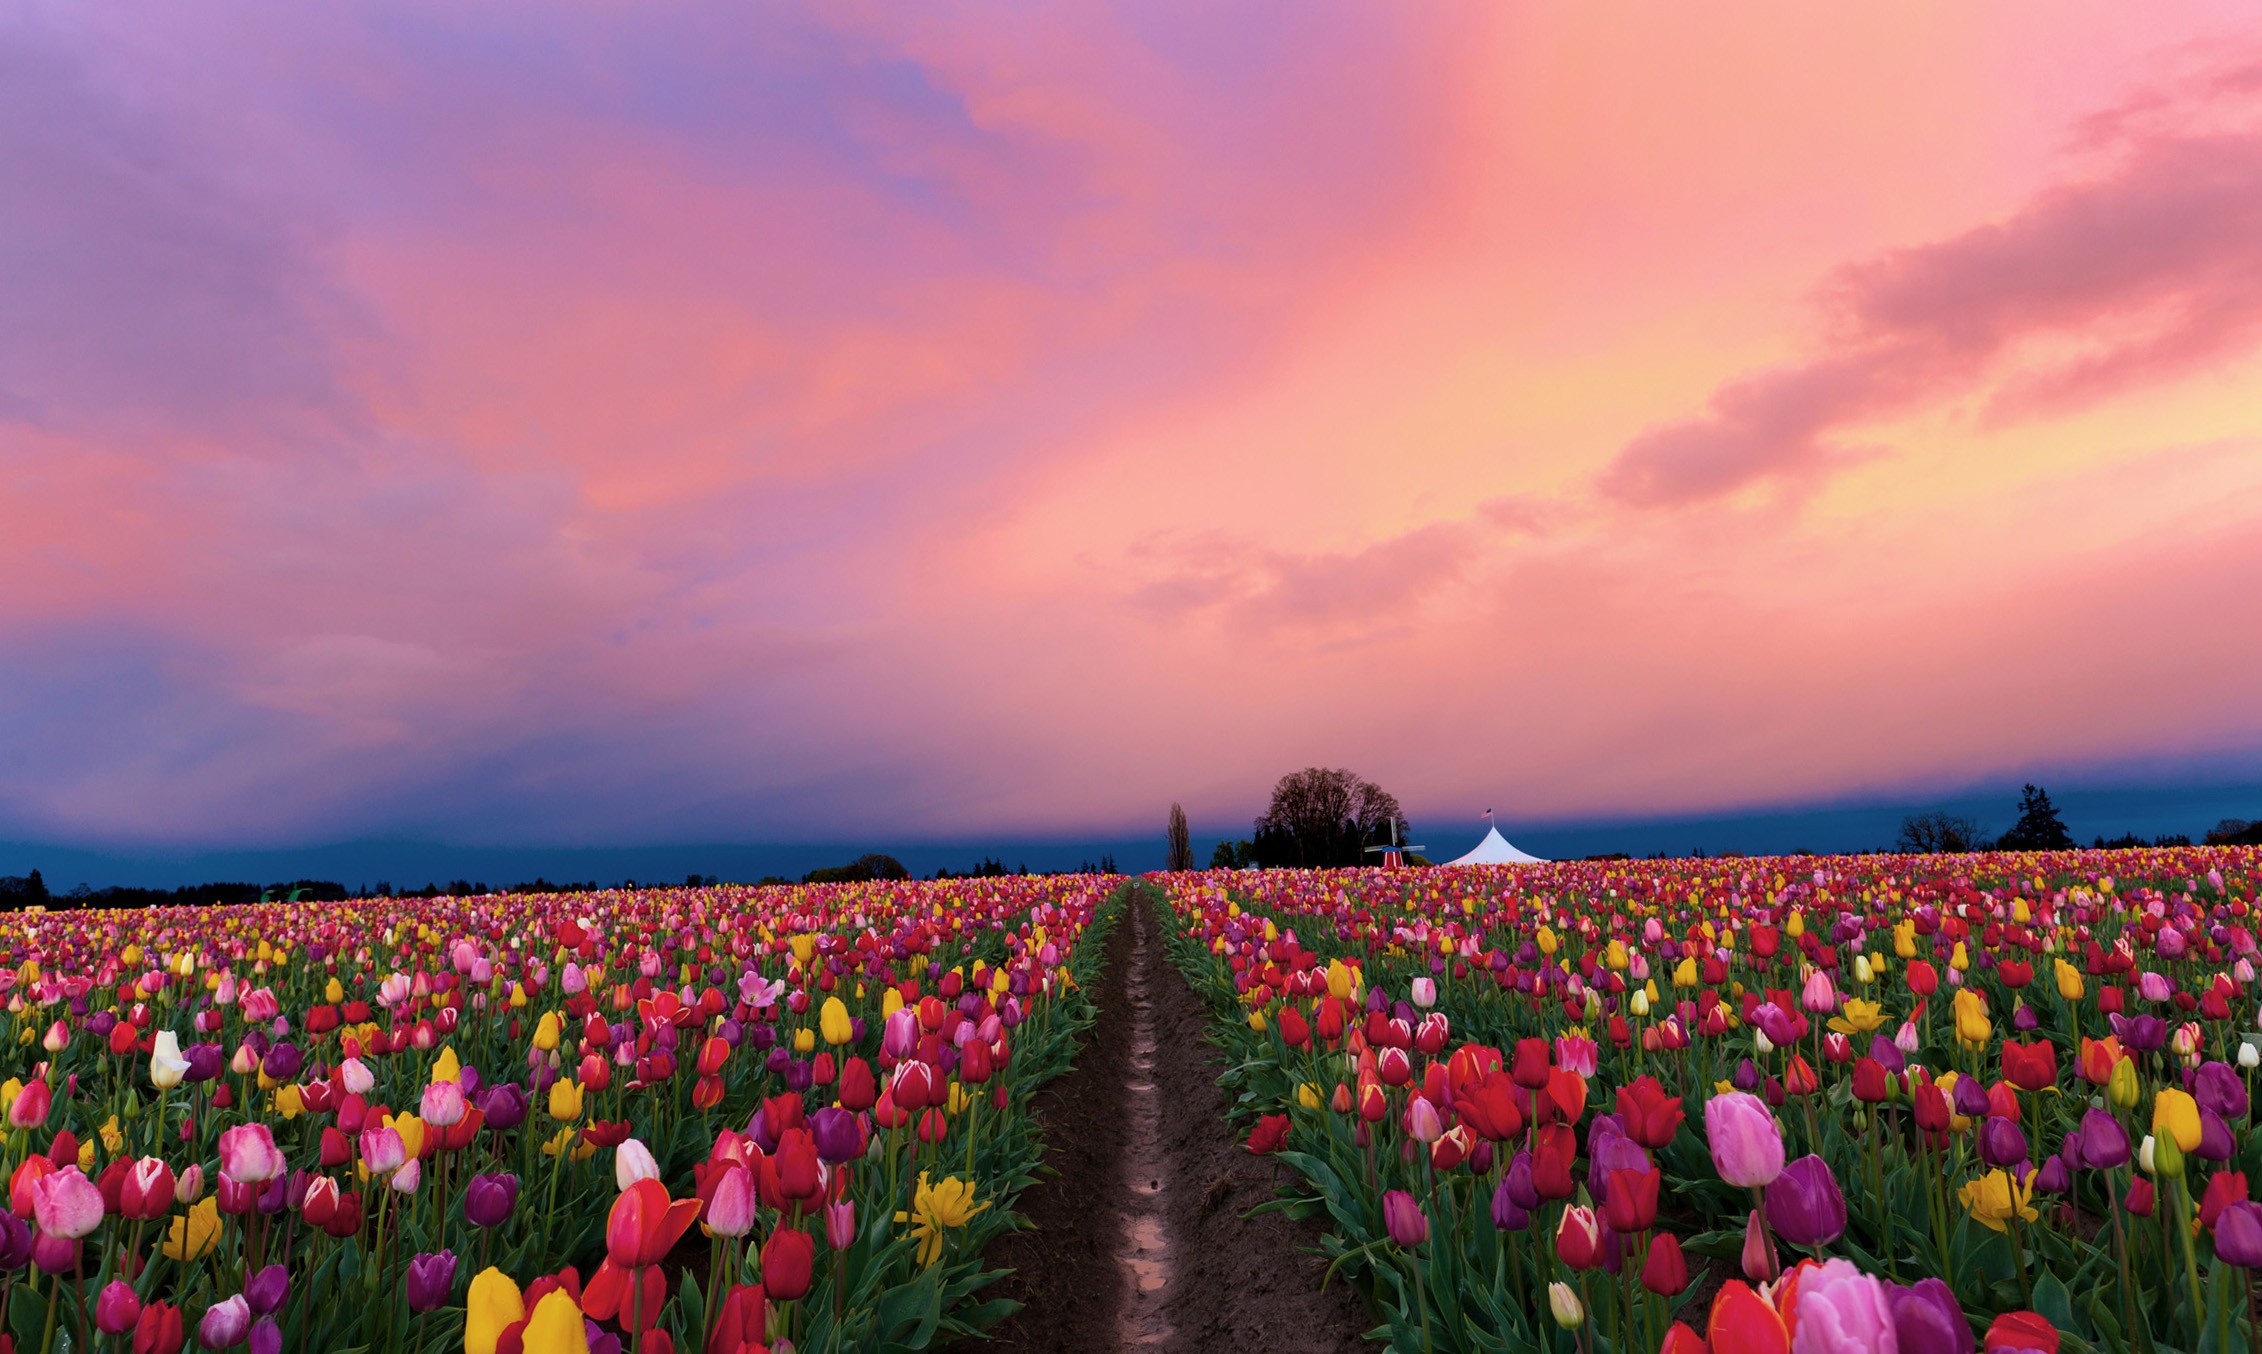 naturaleza fondo de pantalla hd para escritorio descarga gratuita,flor,cielo,tulipán,planta,paisaje natural